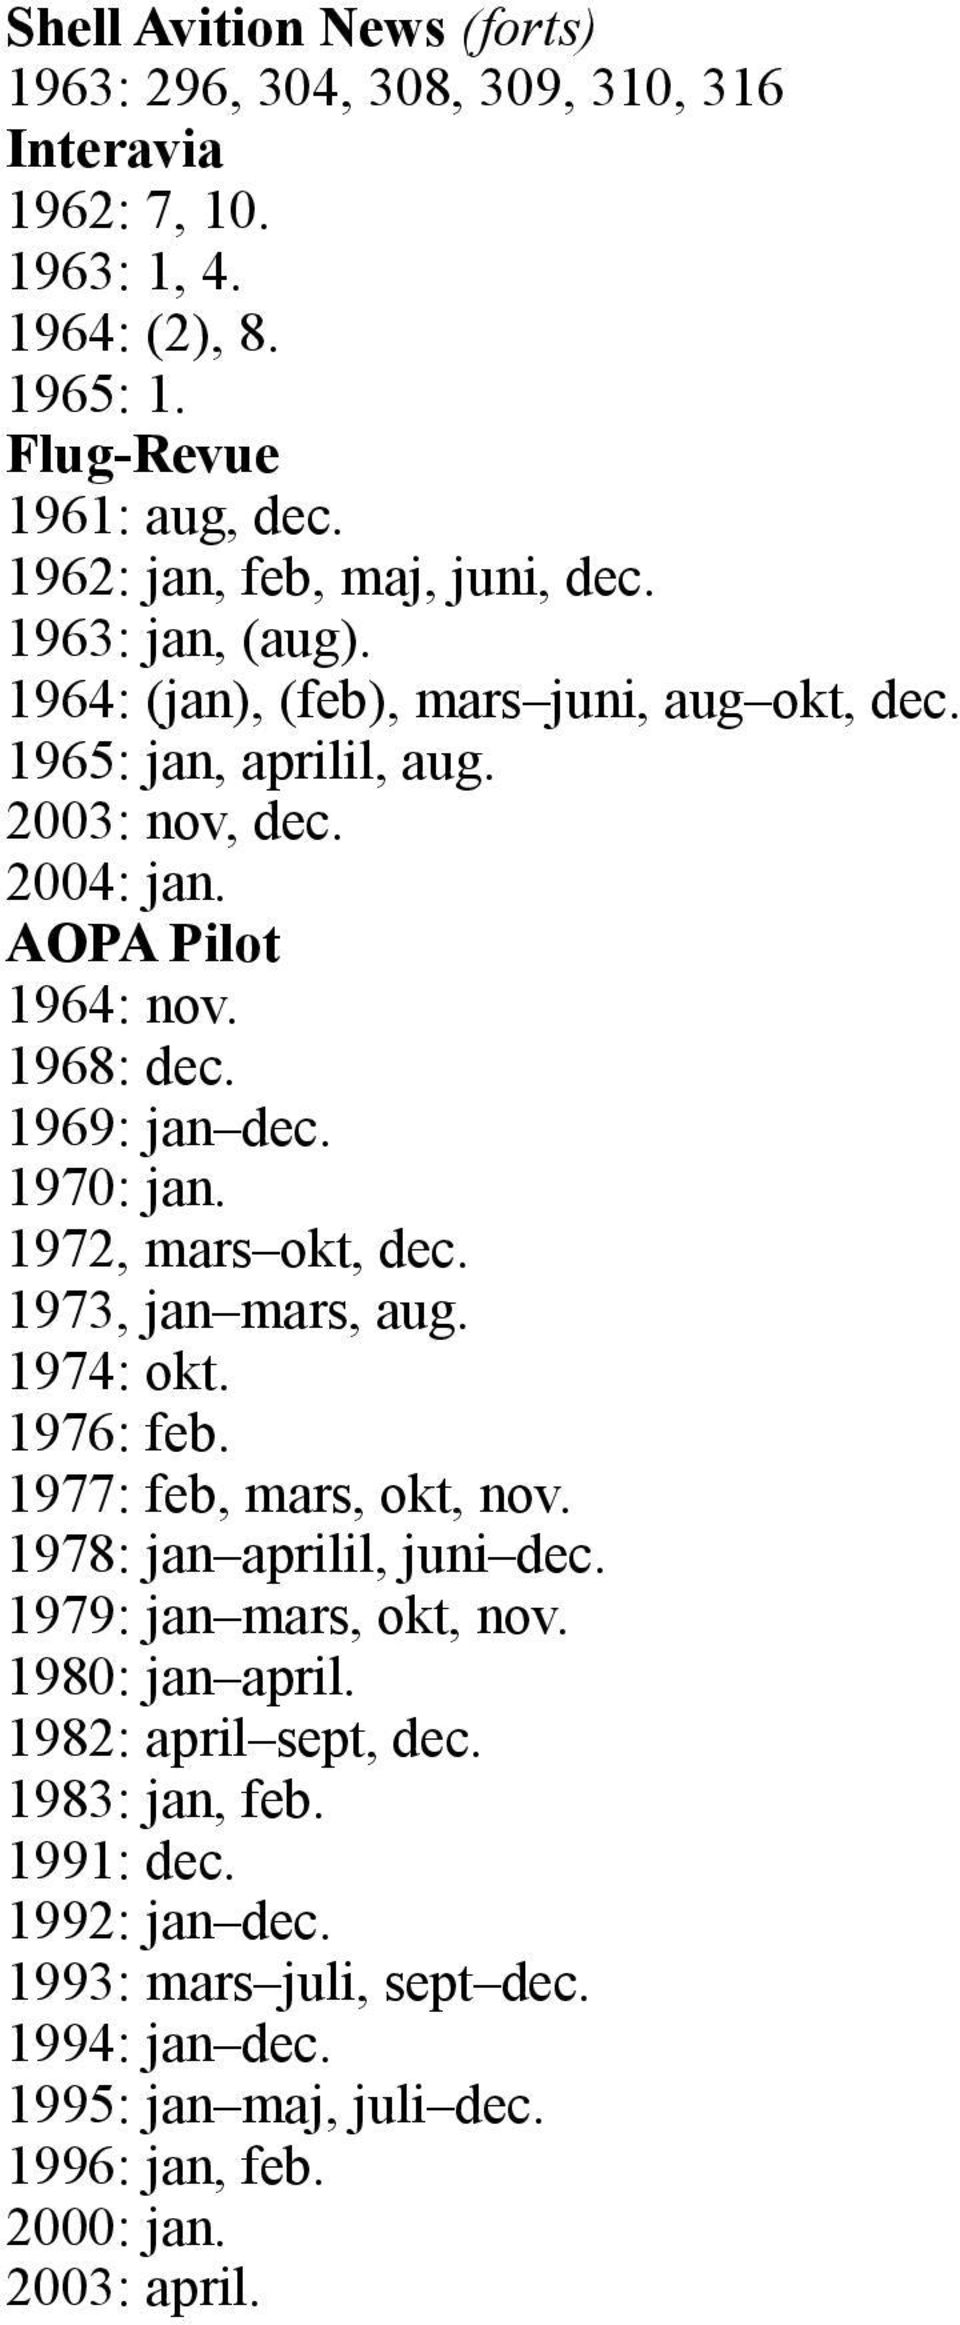 1968: dec. 1969: jan dec. 1970: jan. 1972, mars okt, dec. 1973, jan mars, aug. 1974: okt. 1976: feb. 1977: feb, mars, okt, nov. 1978: jan aprilil, juni dec.